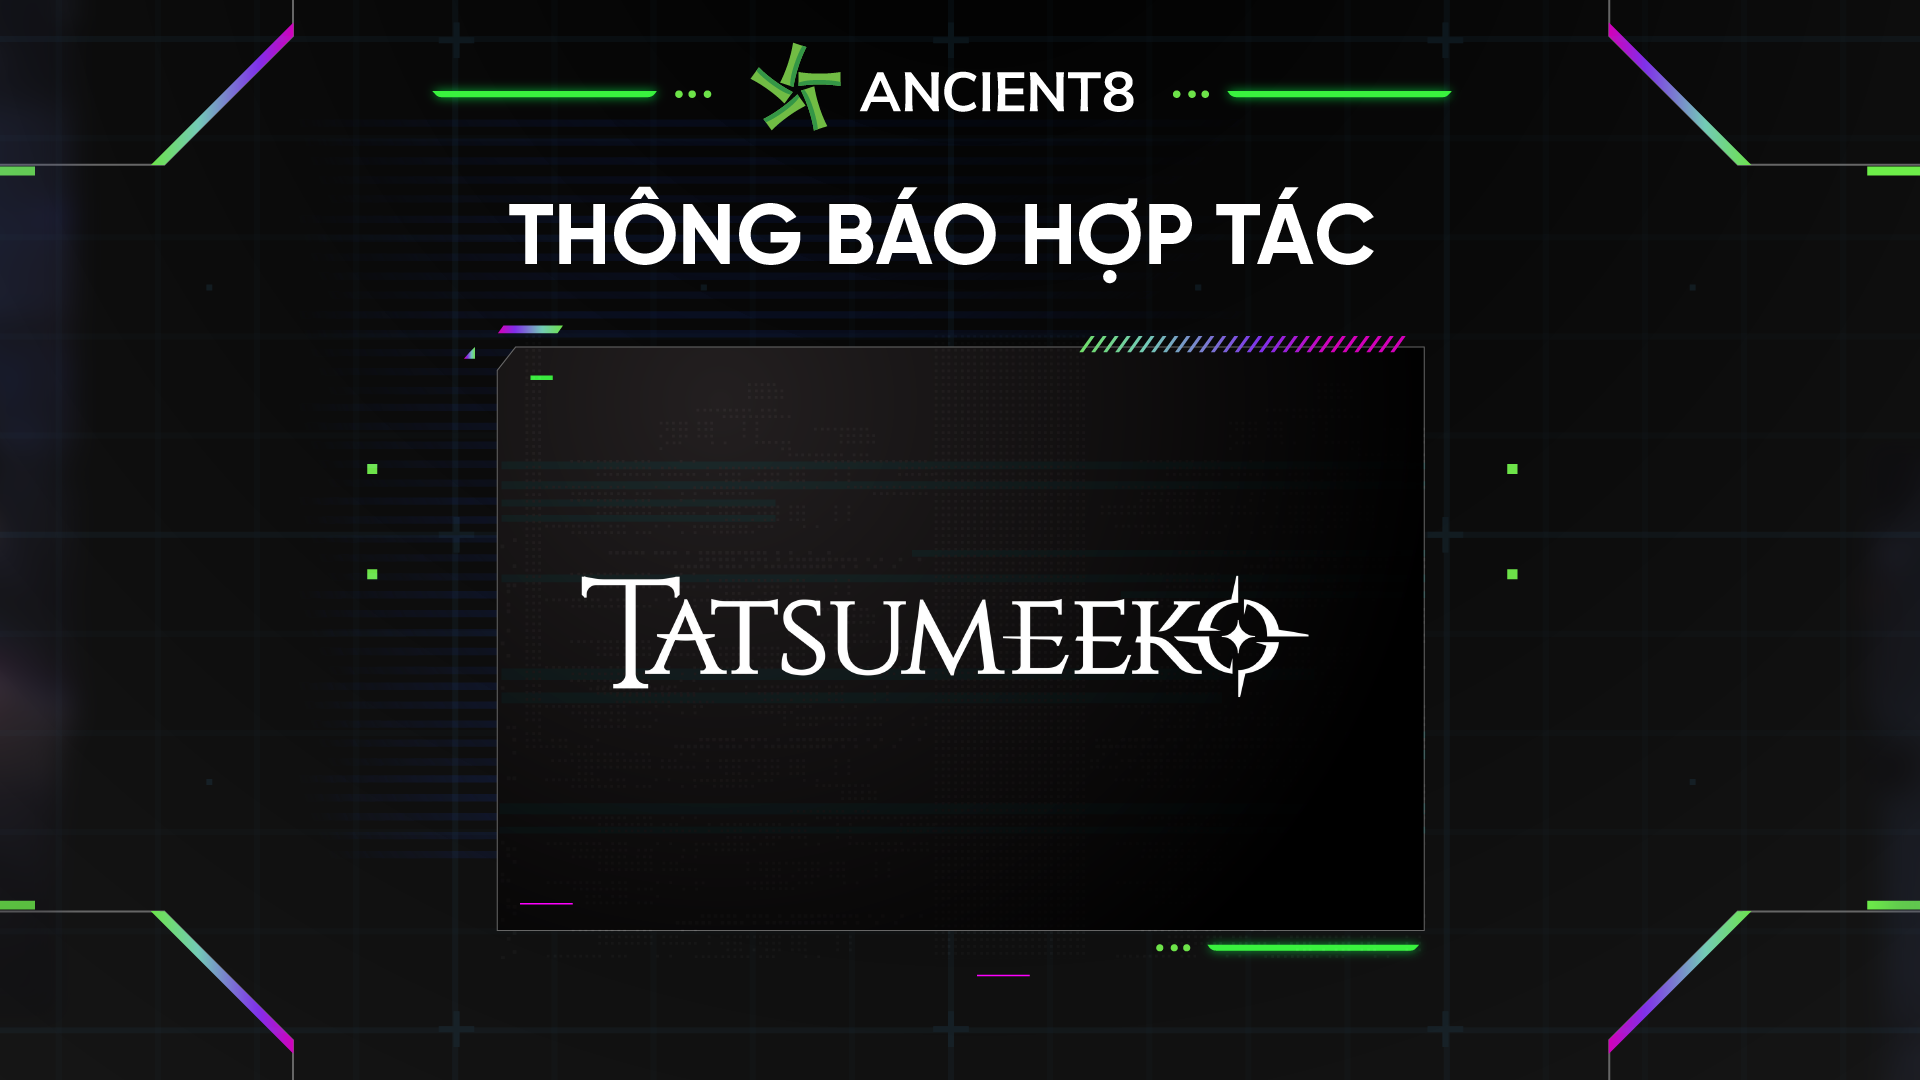 Ancient8 hợp tác với Tatsumeeko, Thế giới giả tưởng MMORPG trên Web3 dành cho Discord và Mobile